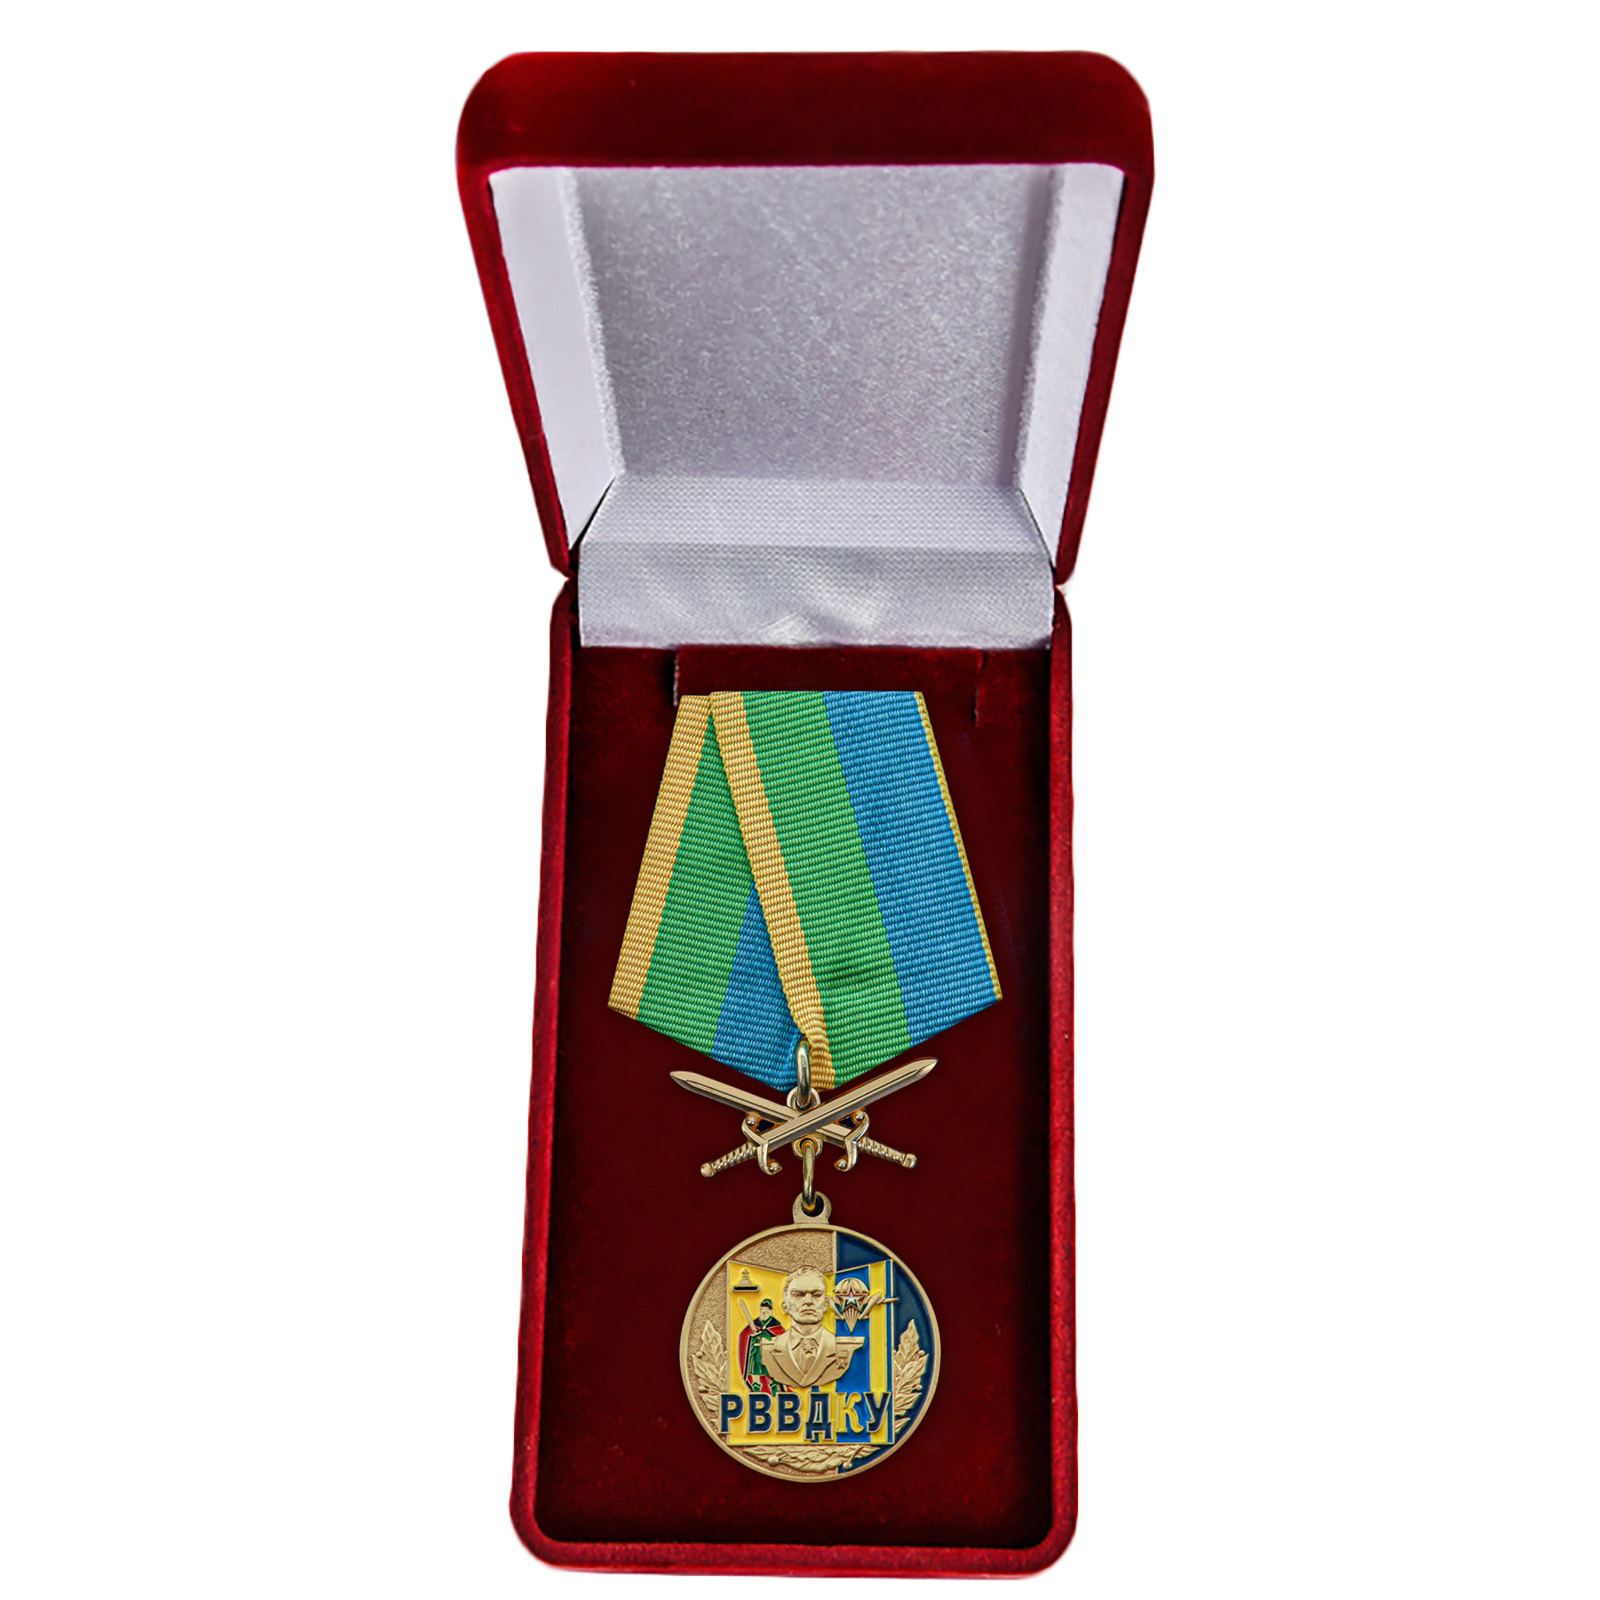 Купить медаль РВВДКУ онлайн выгодно